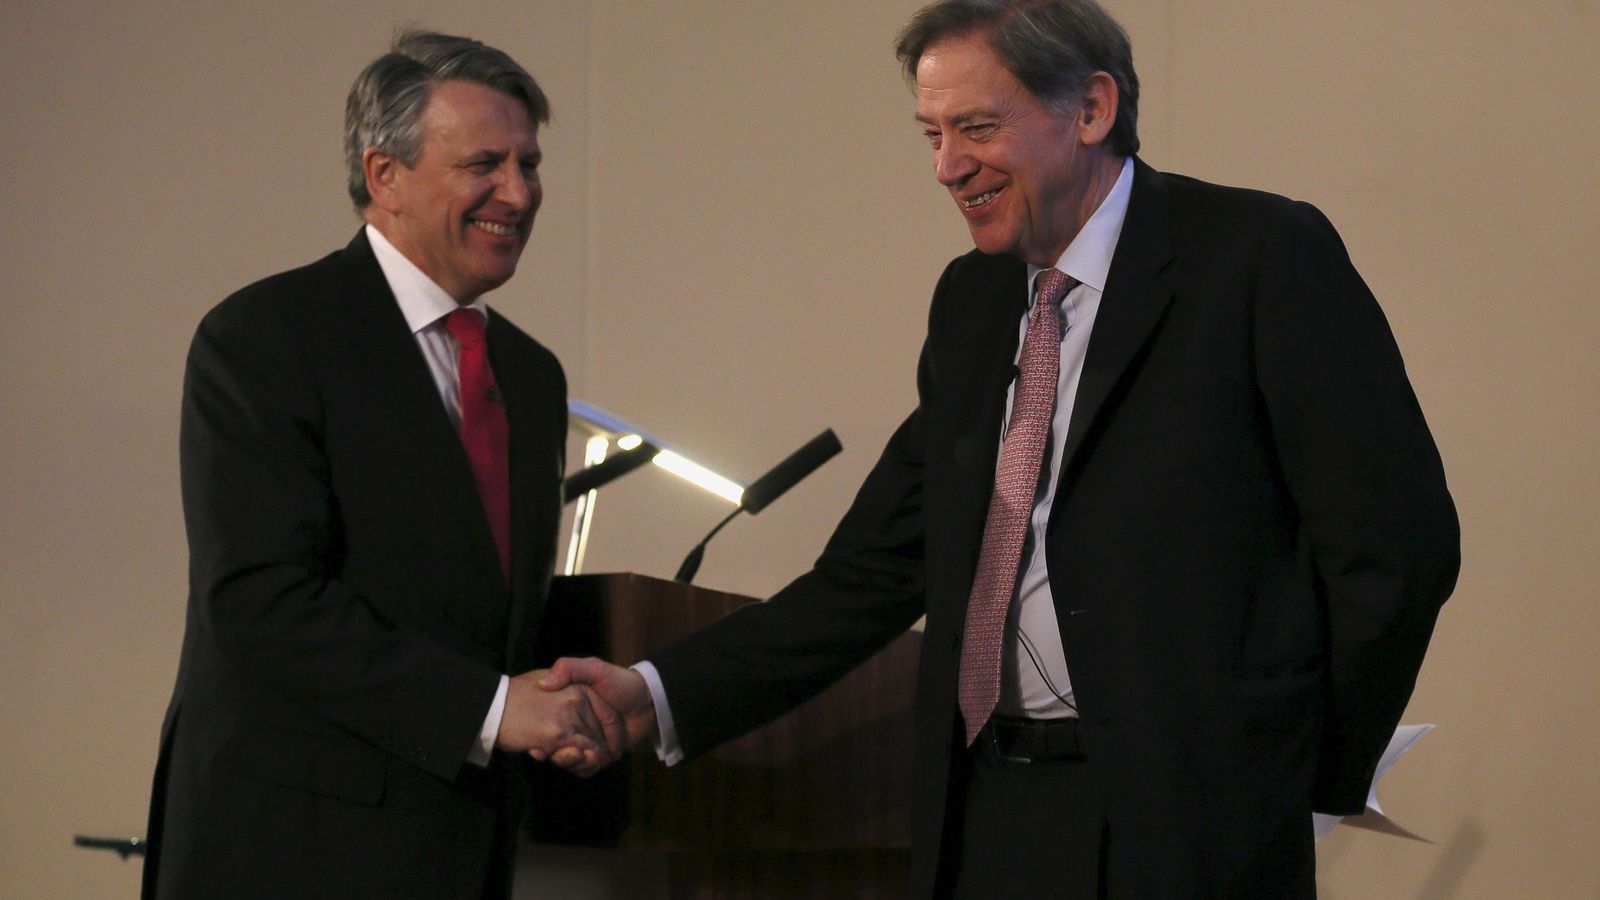 Foto: Van Beurden (Royal Dutch Shell) junto a Andrew Gould (BG Group) tras conocerse la noticia de la transacción (Reuters)